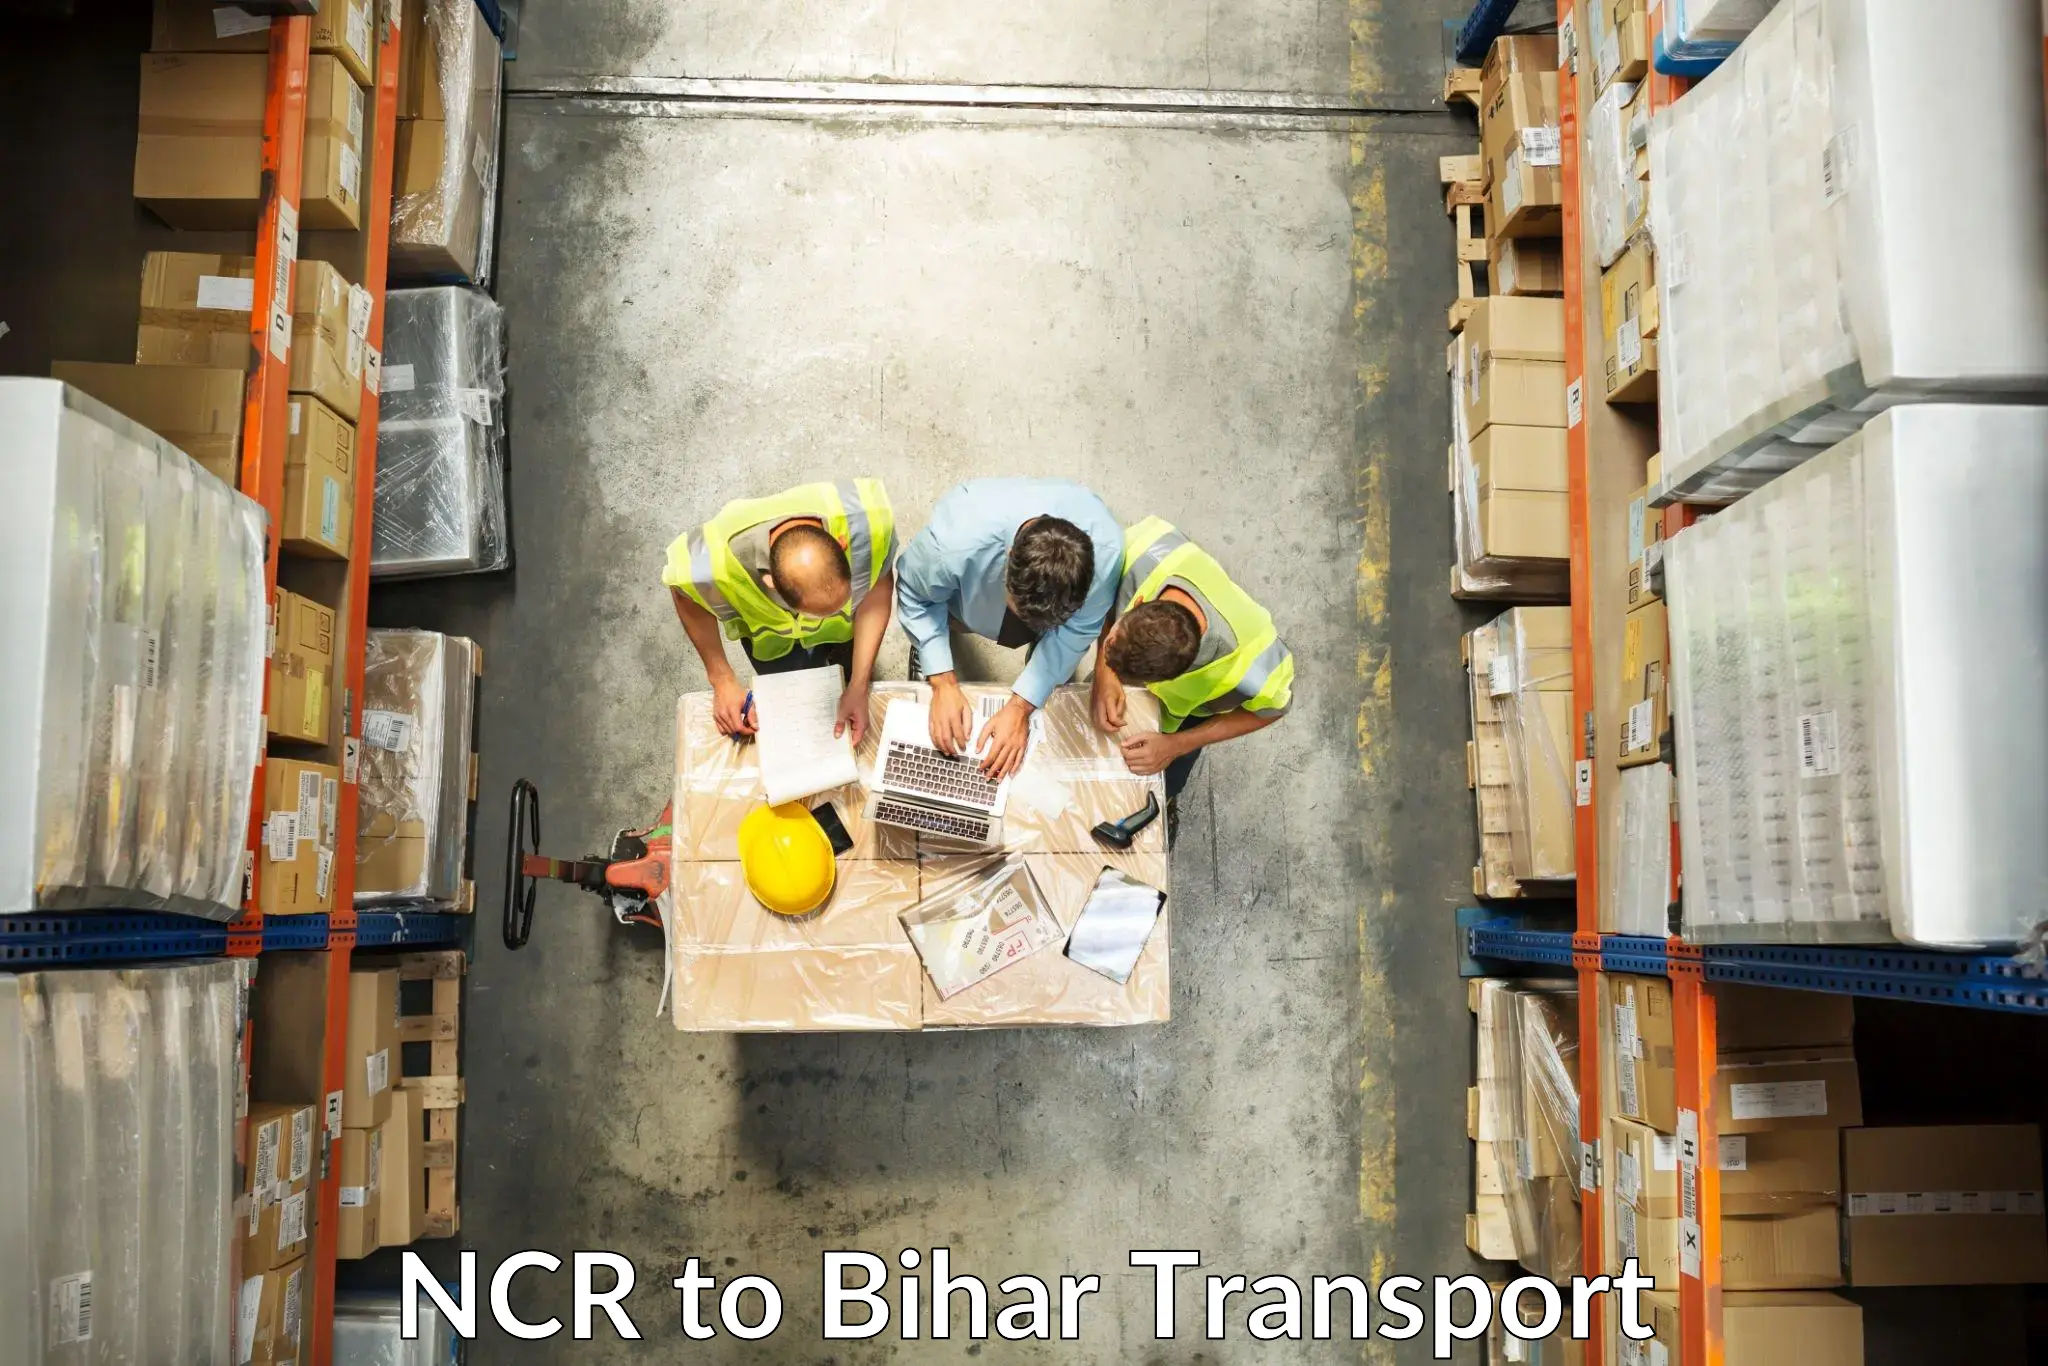 Furniture transport service NCR to Sheonar